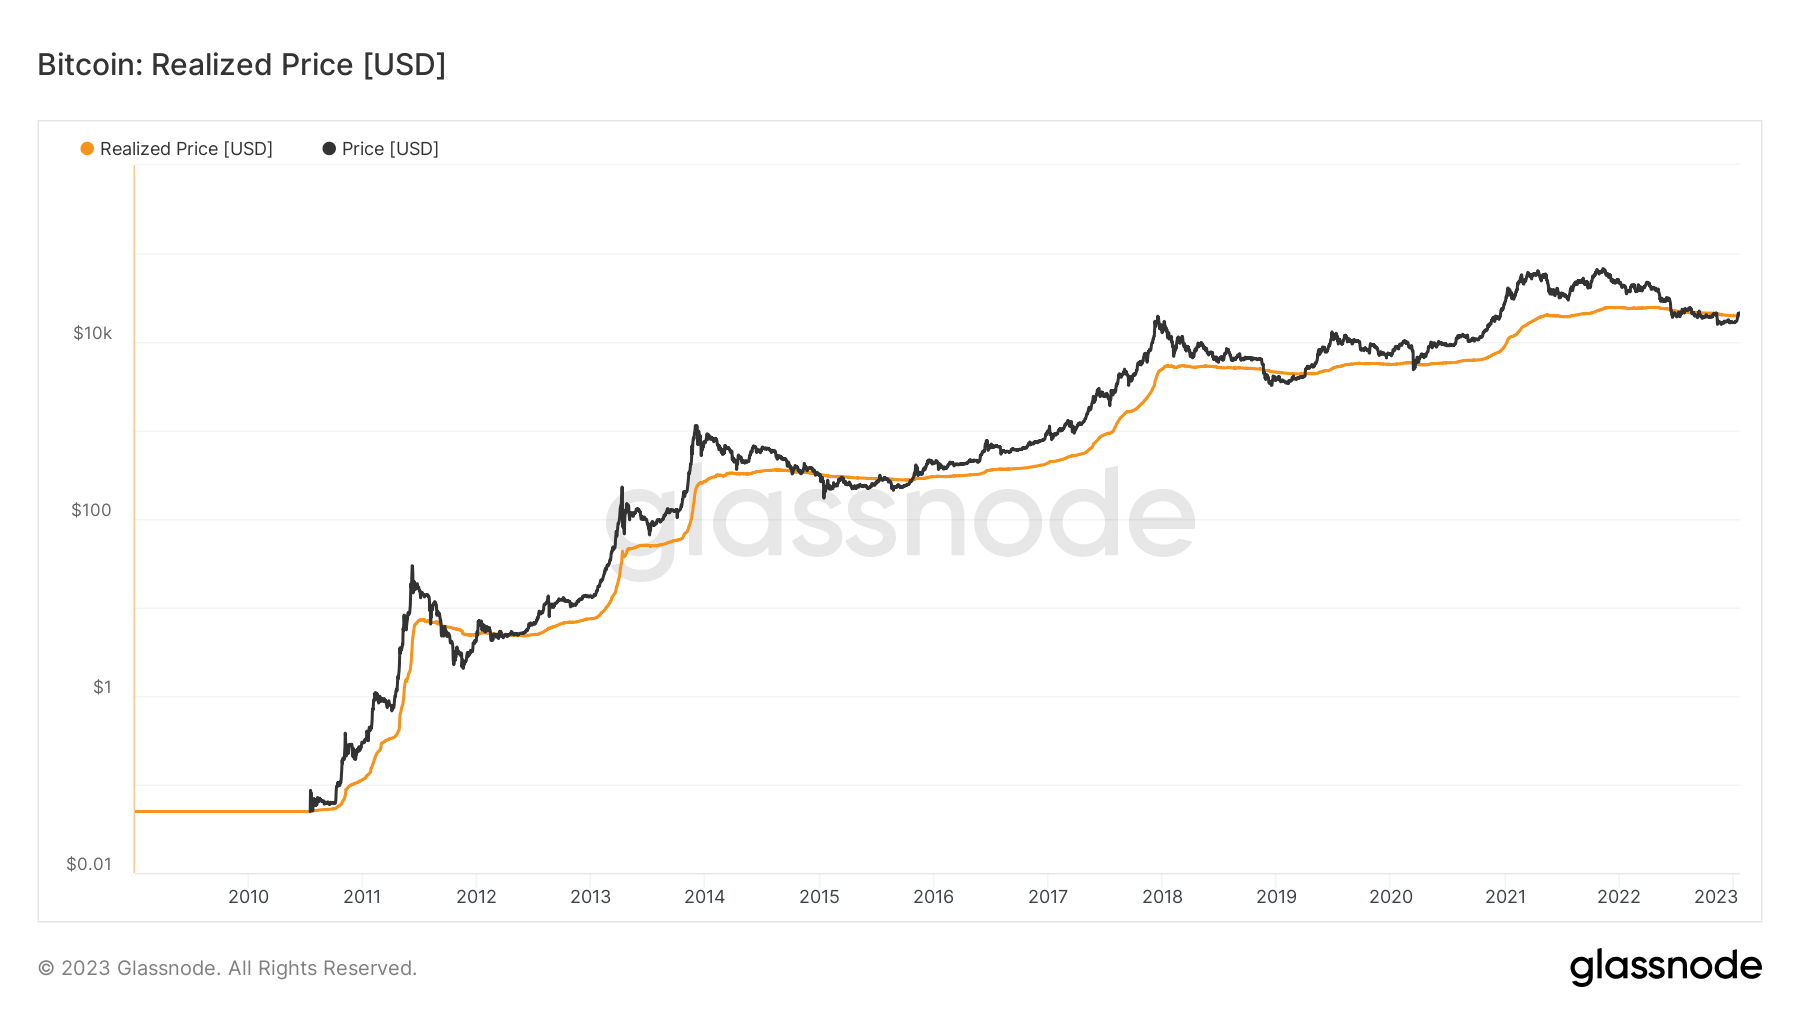 BTC realized price since 2010